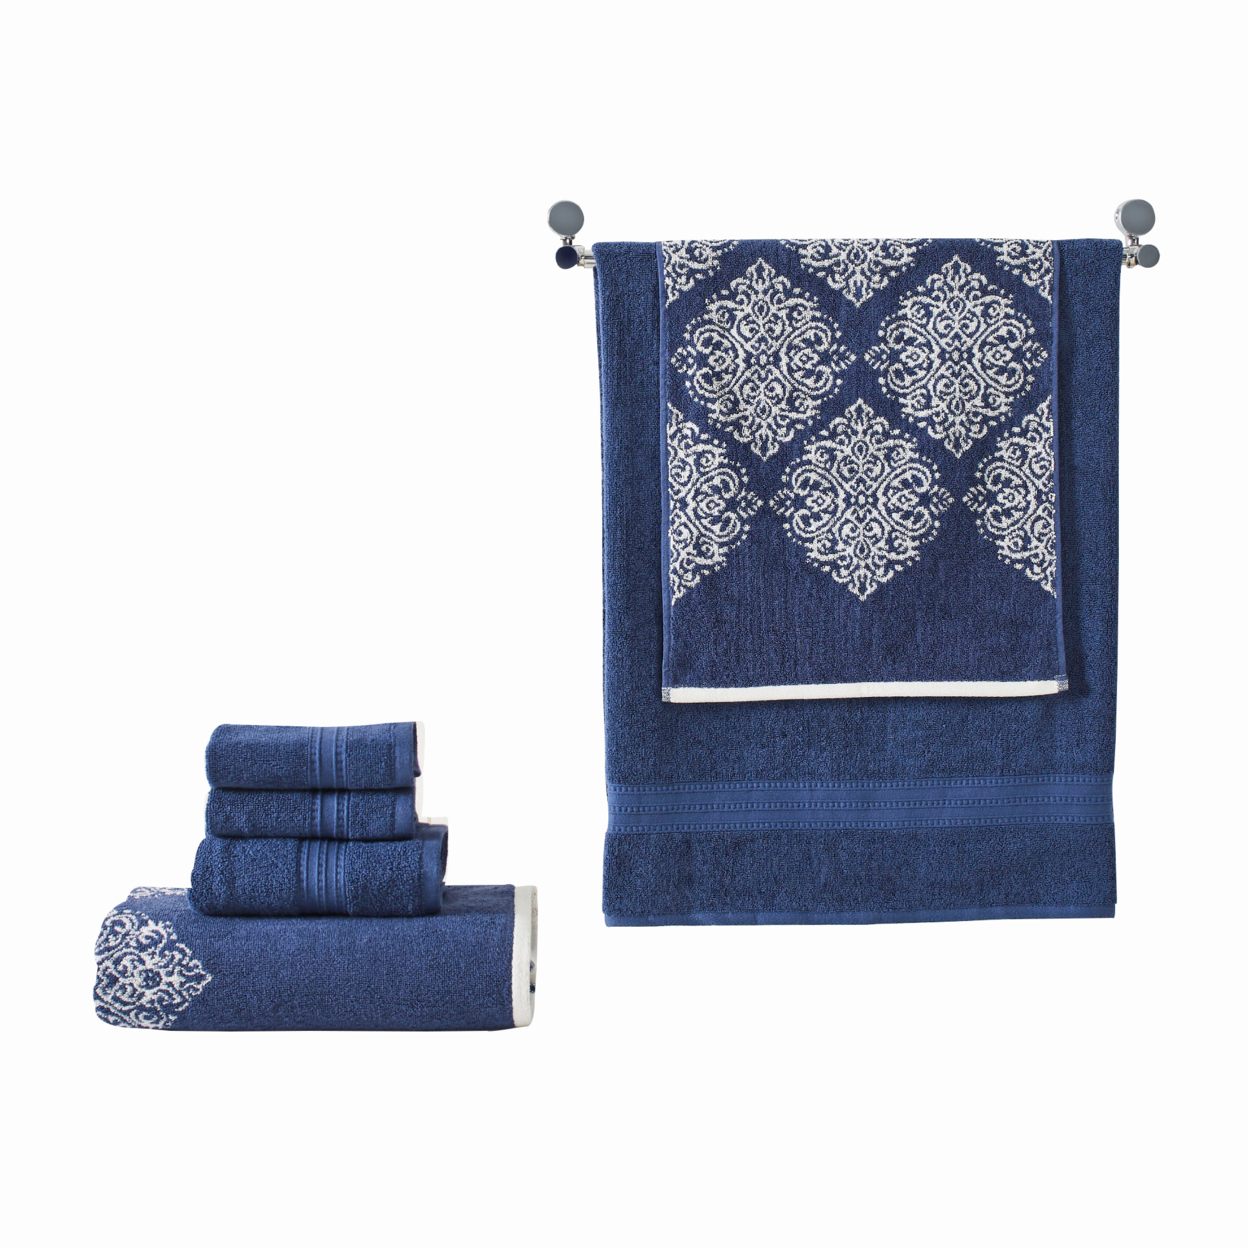 Eula Modern 6 Piece Cotton Towel Set, Stylish Damask Pattern, Deep Blue- Saltoro Sherpi